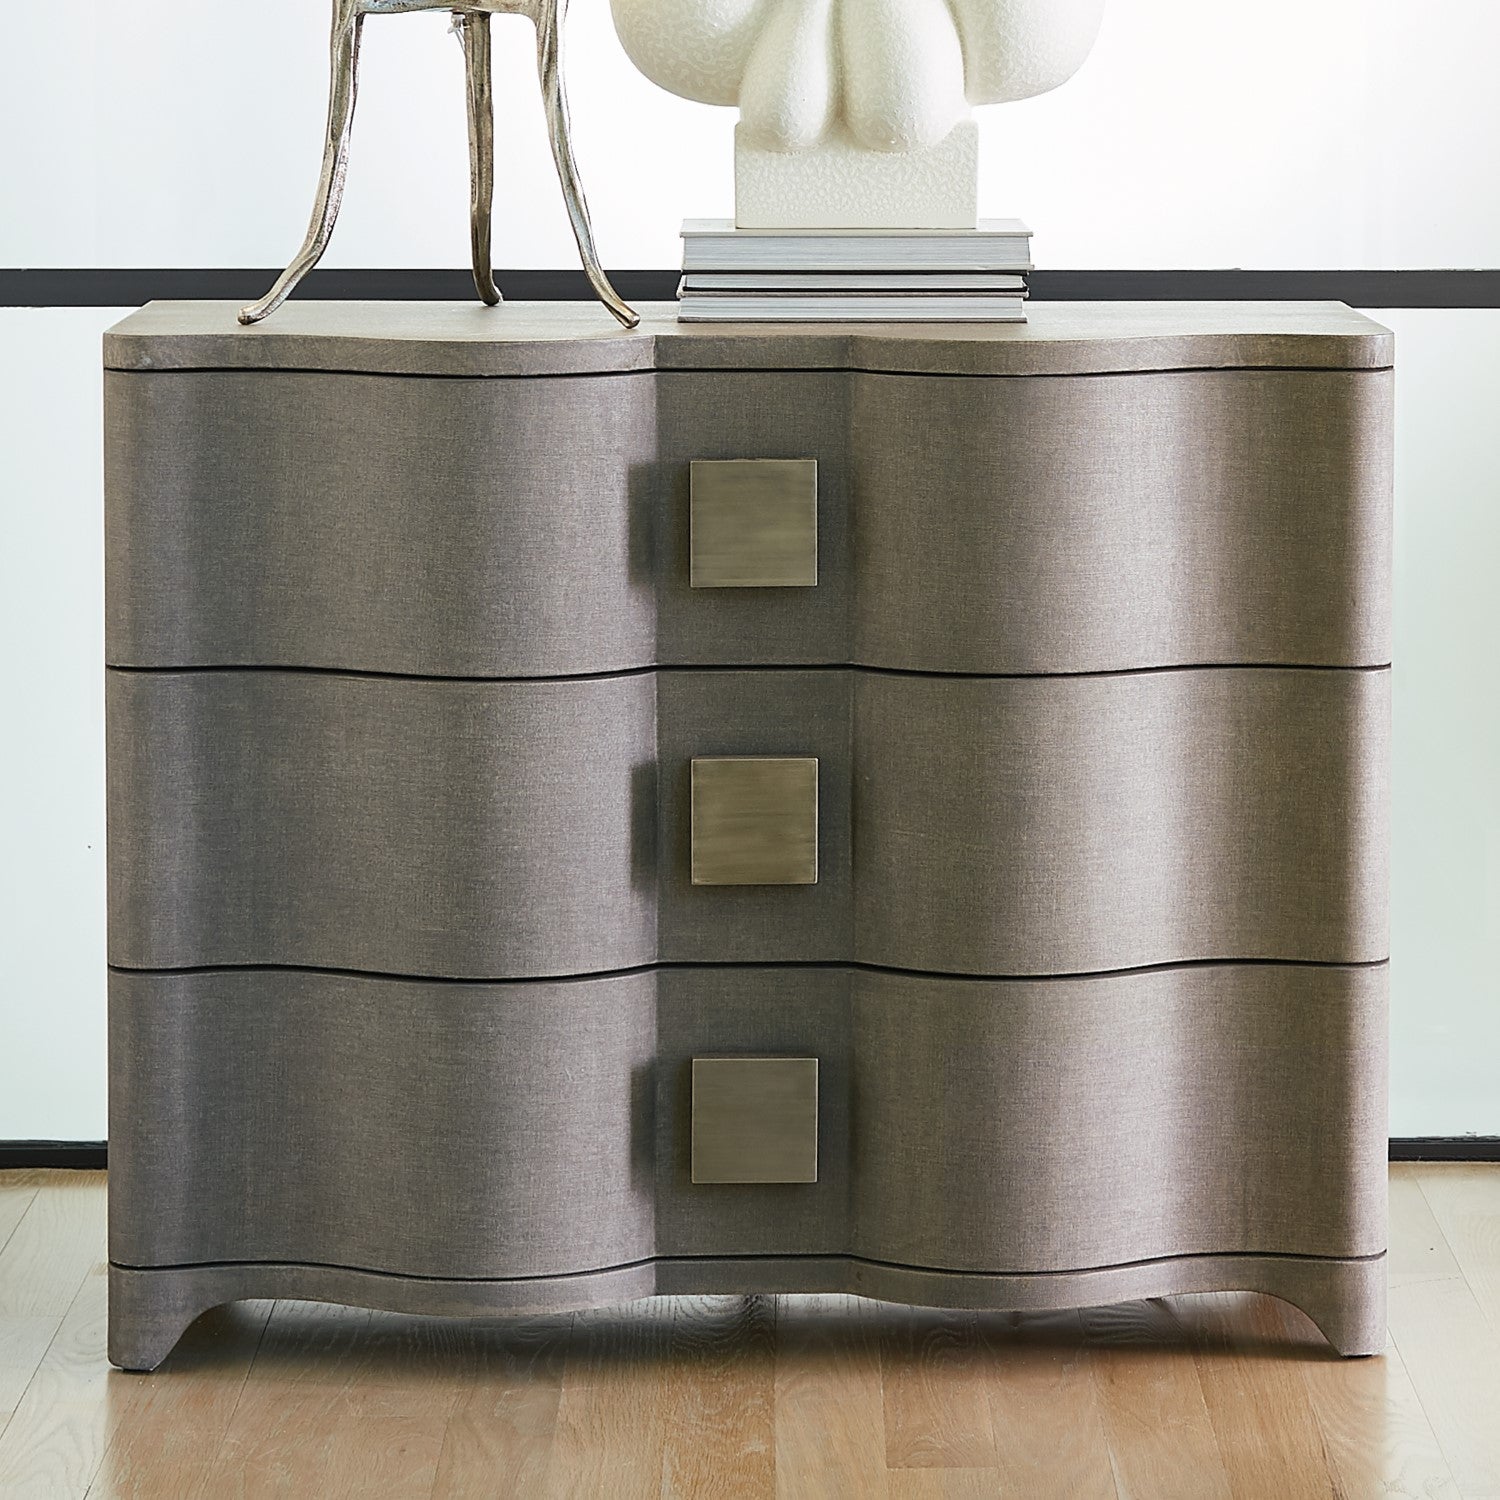 Toile 40"W Linen Chest - Grey - Grats Decor Interior Design & Build Inc.